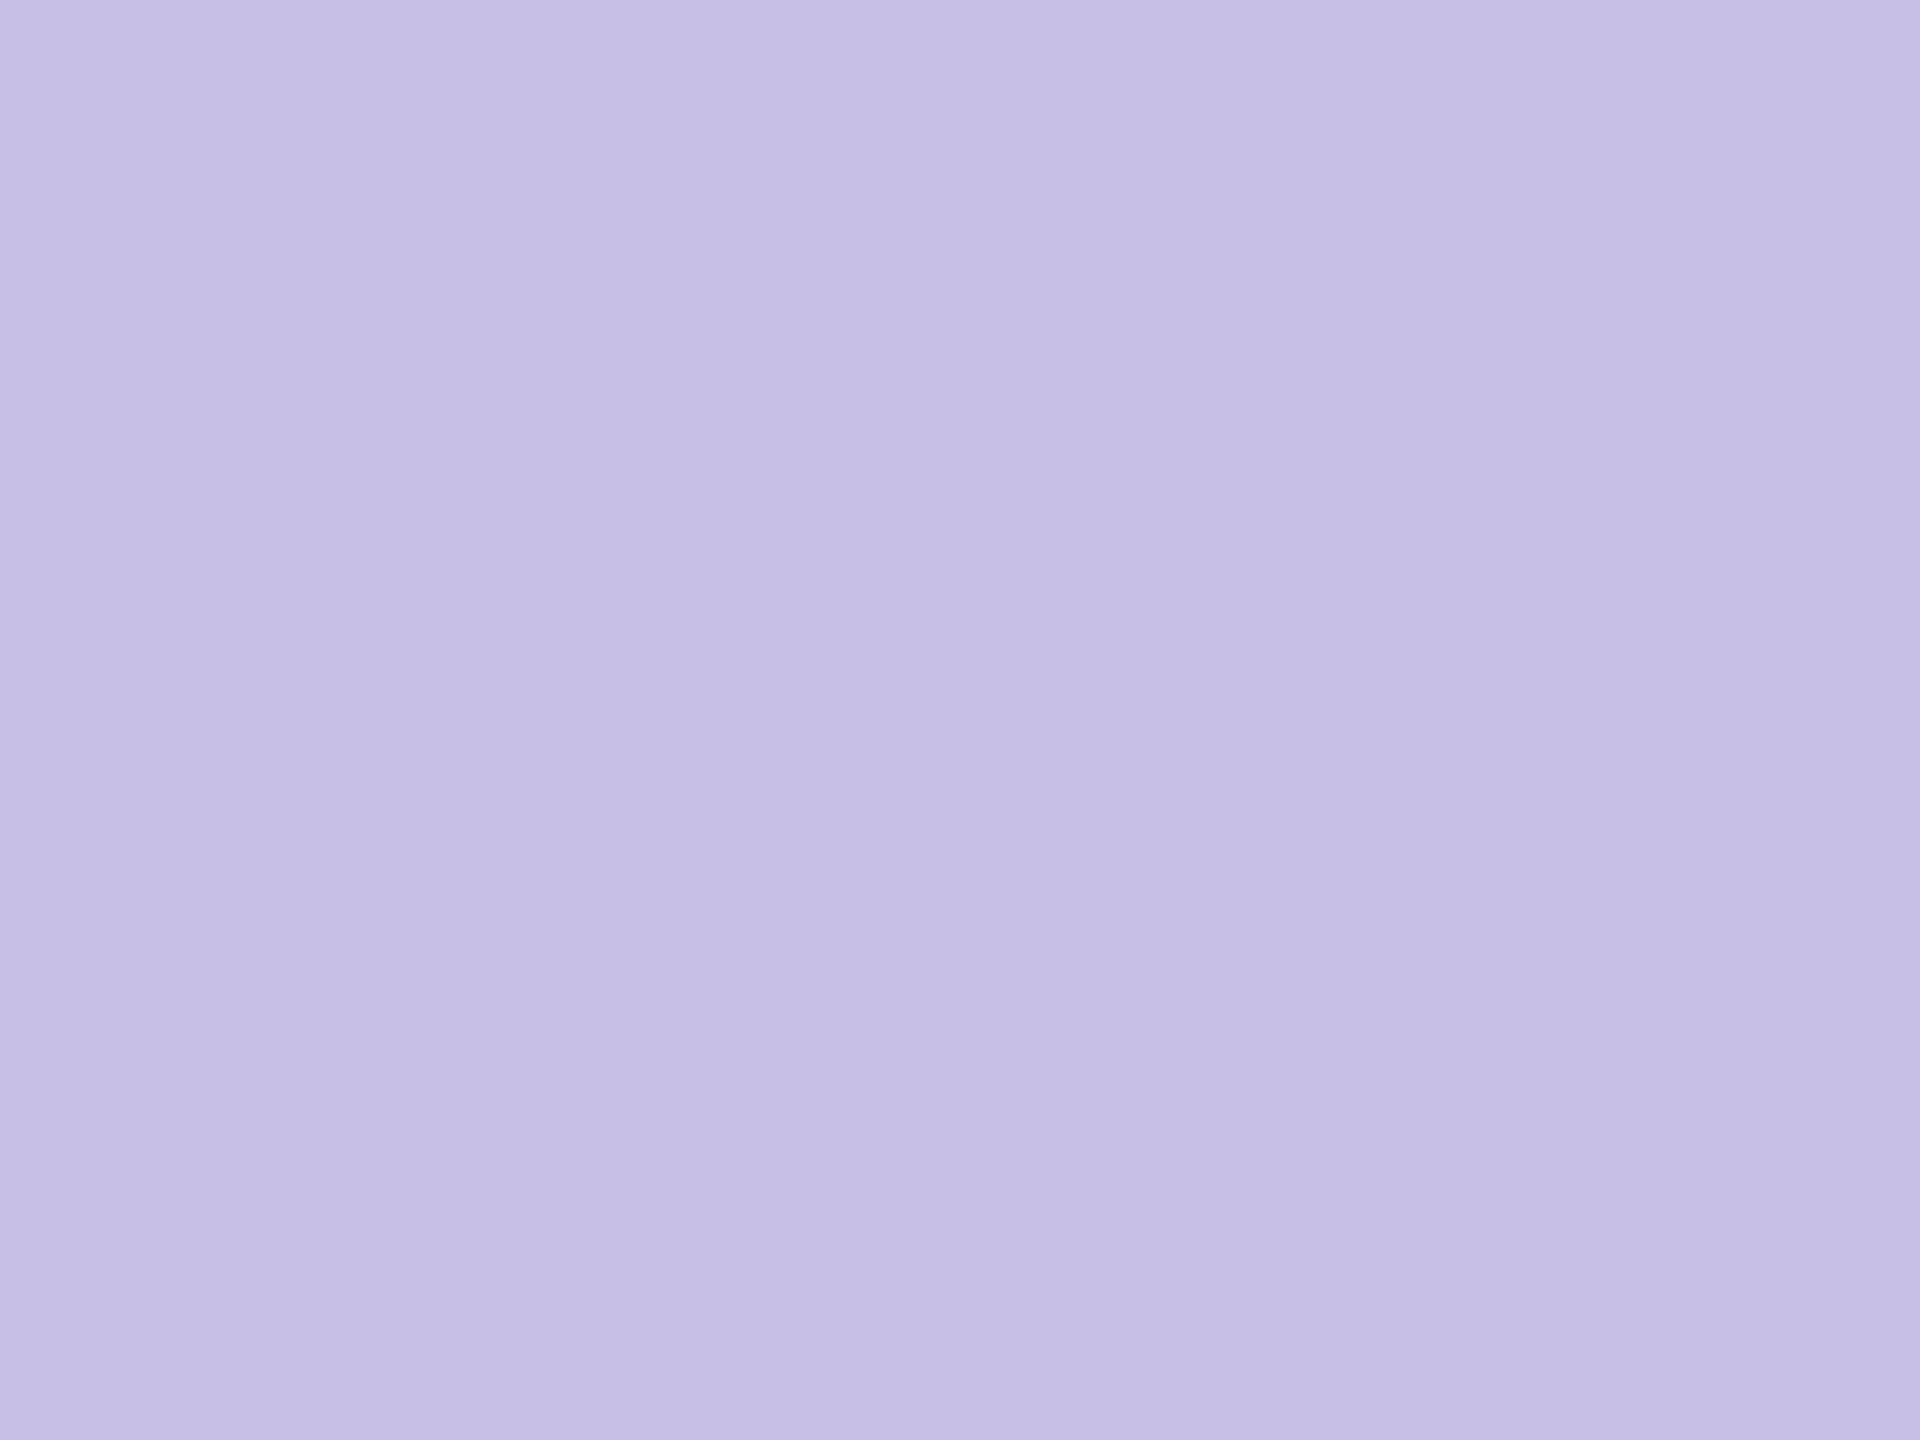 Solid Lavender Background